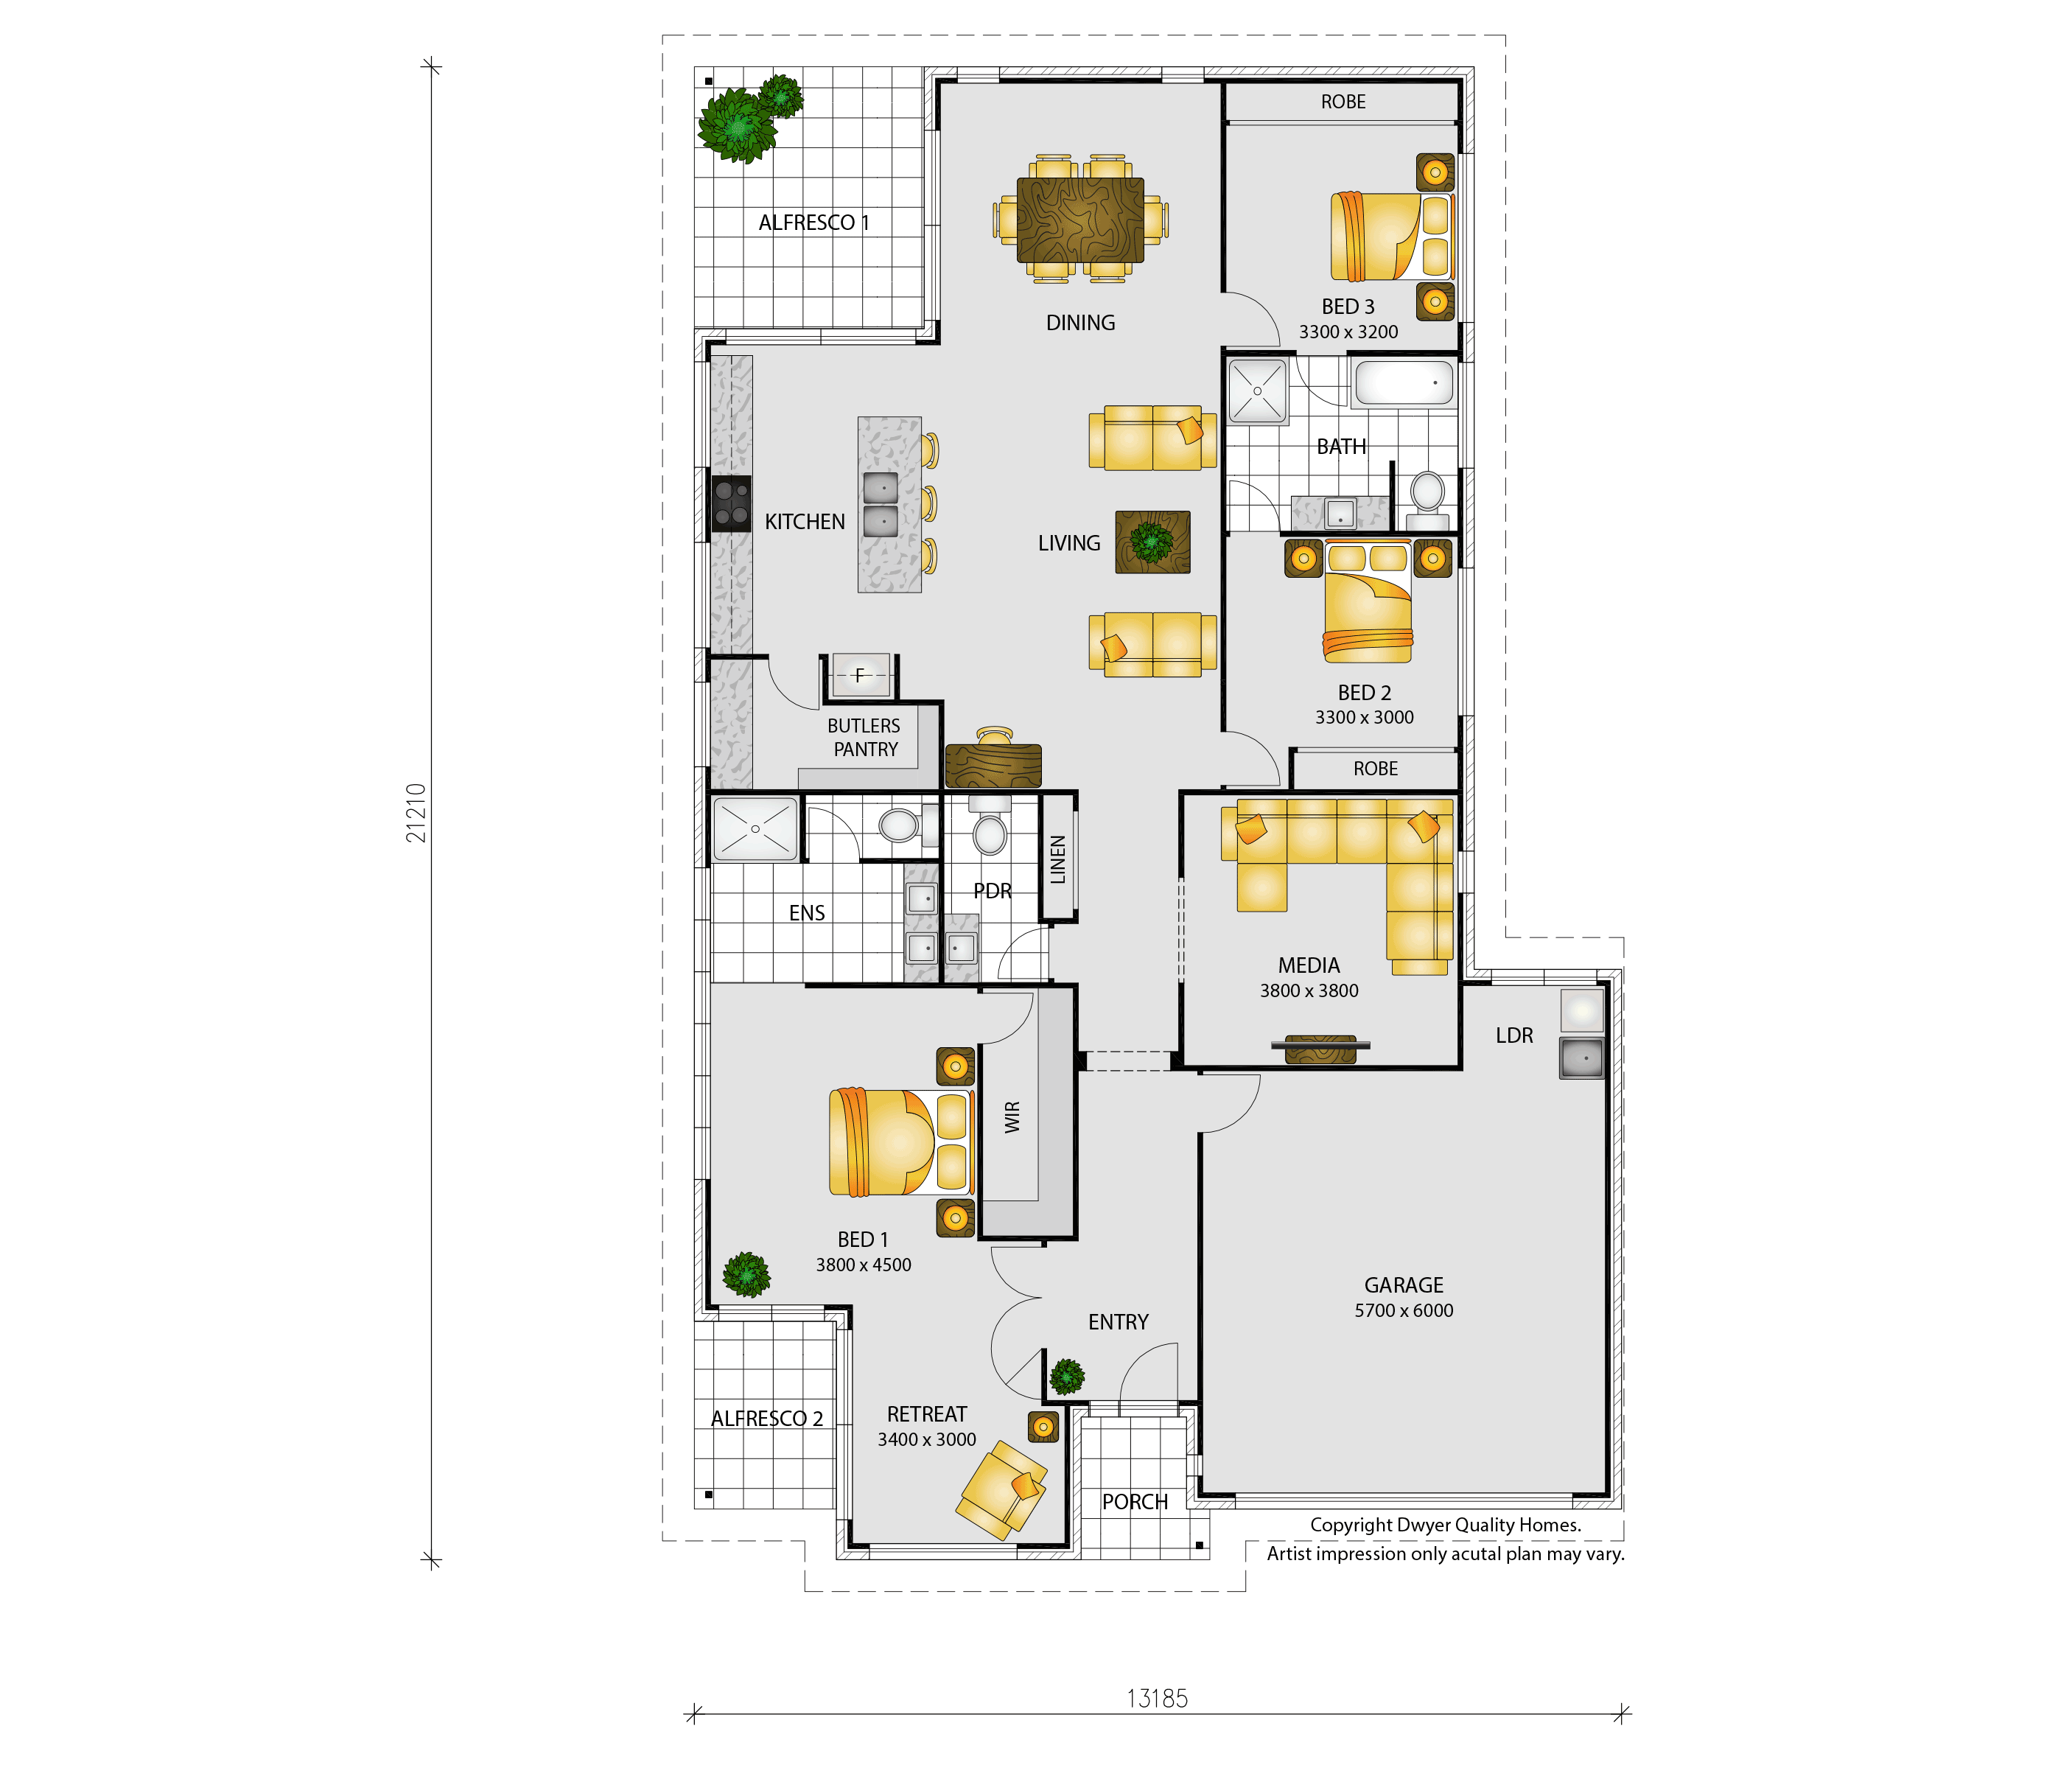 Nusa Dua - Floorplans